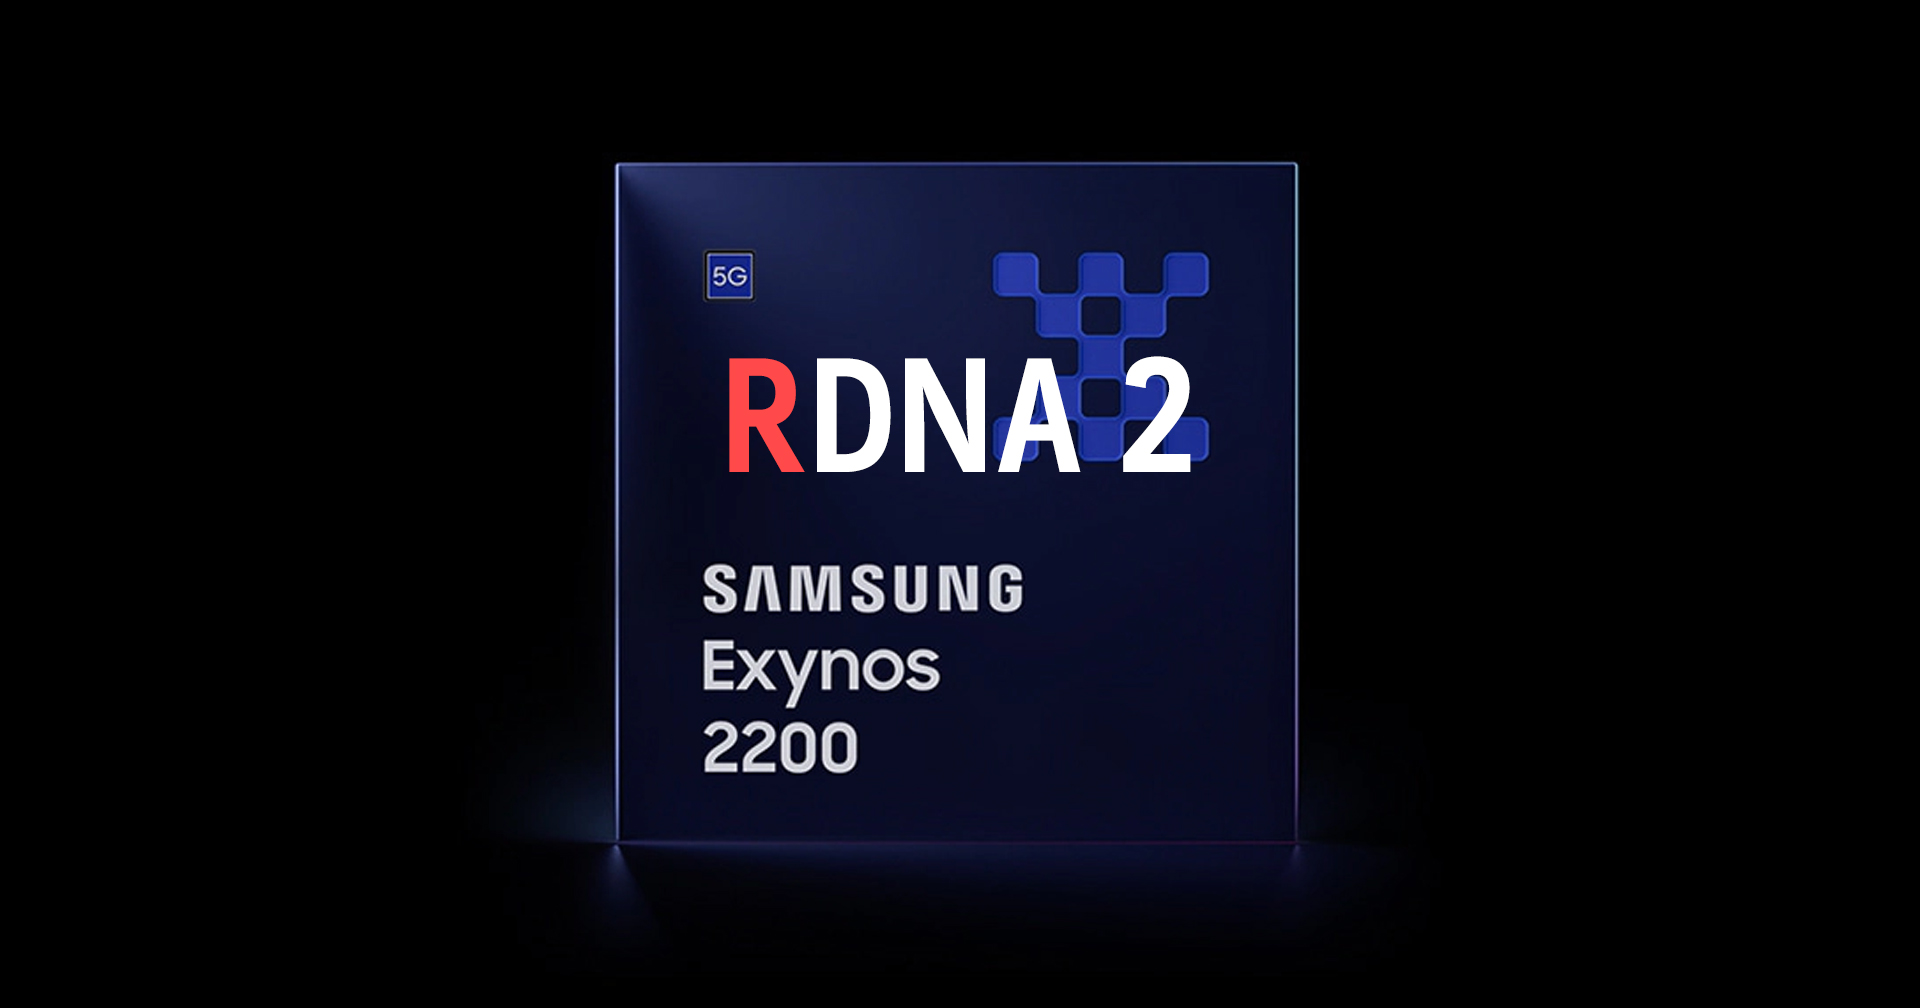 ชิป Samsung Exynos 2200 ที่ใช้ GPU ของ AMD อาจจะถูกนำไปใช้ทั้งในสมาร์ตโฟน และโน้ตบุ๊ก